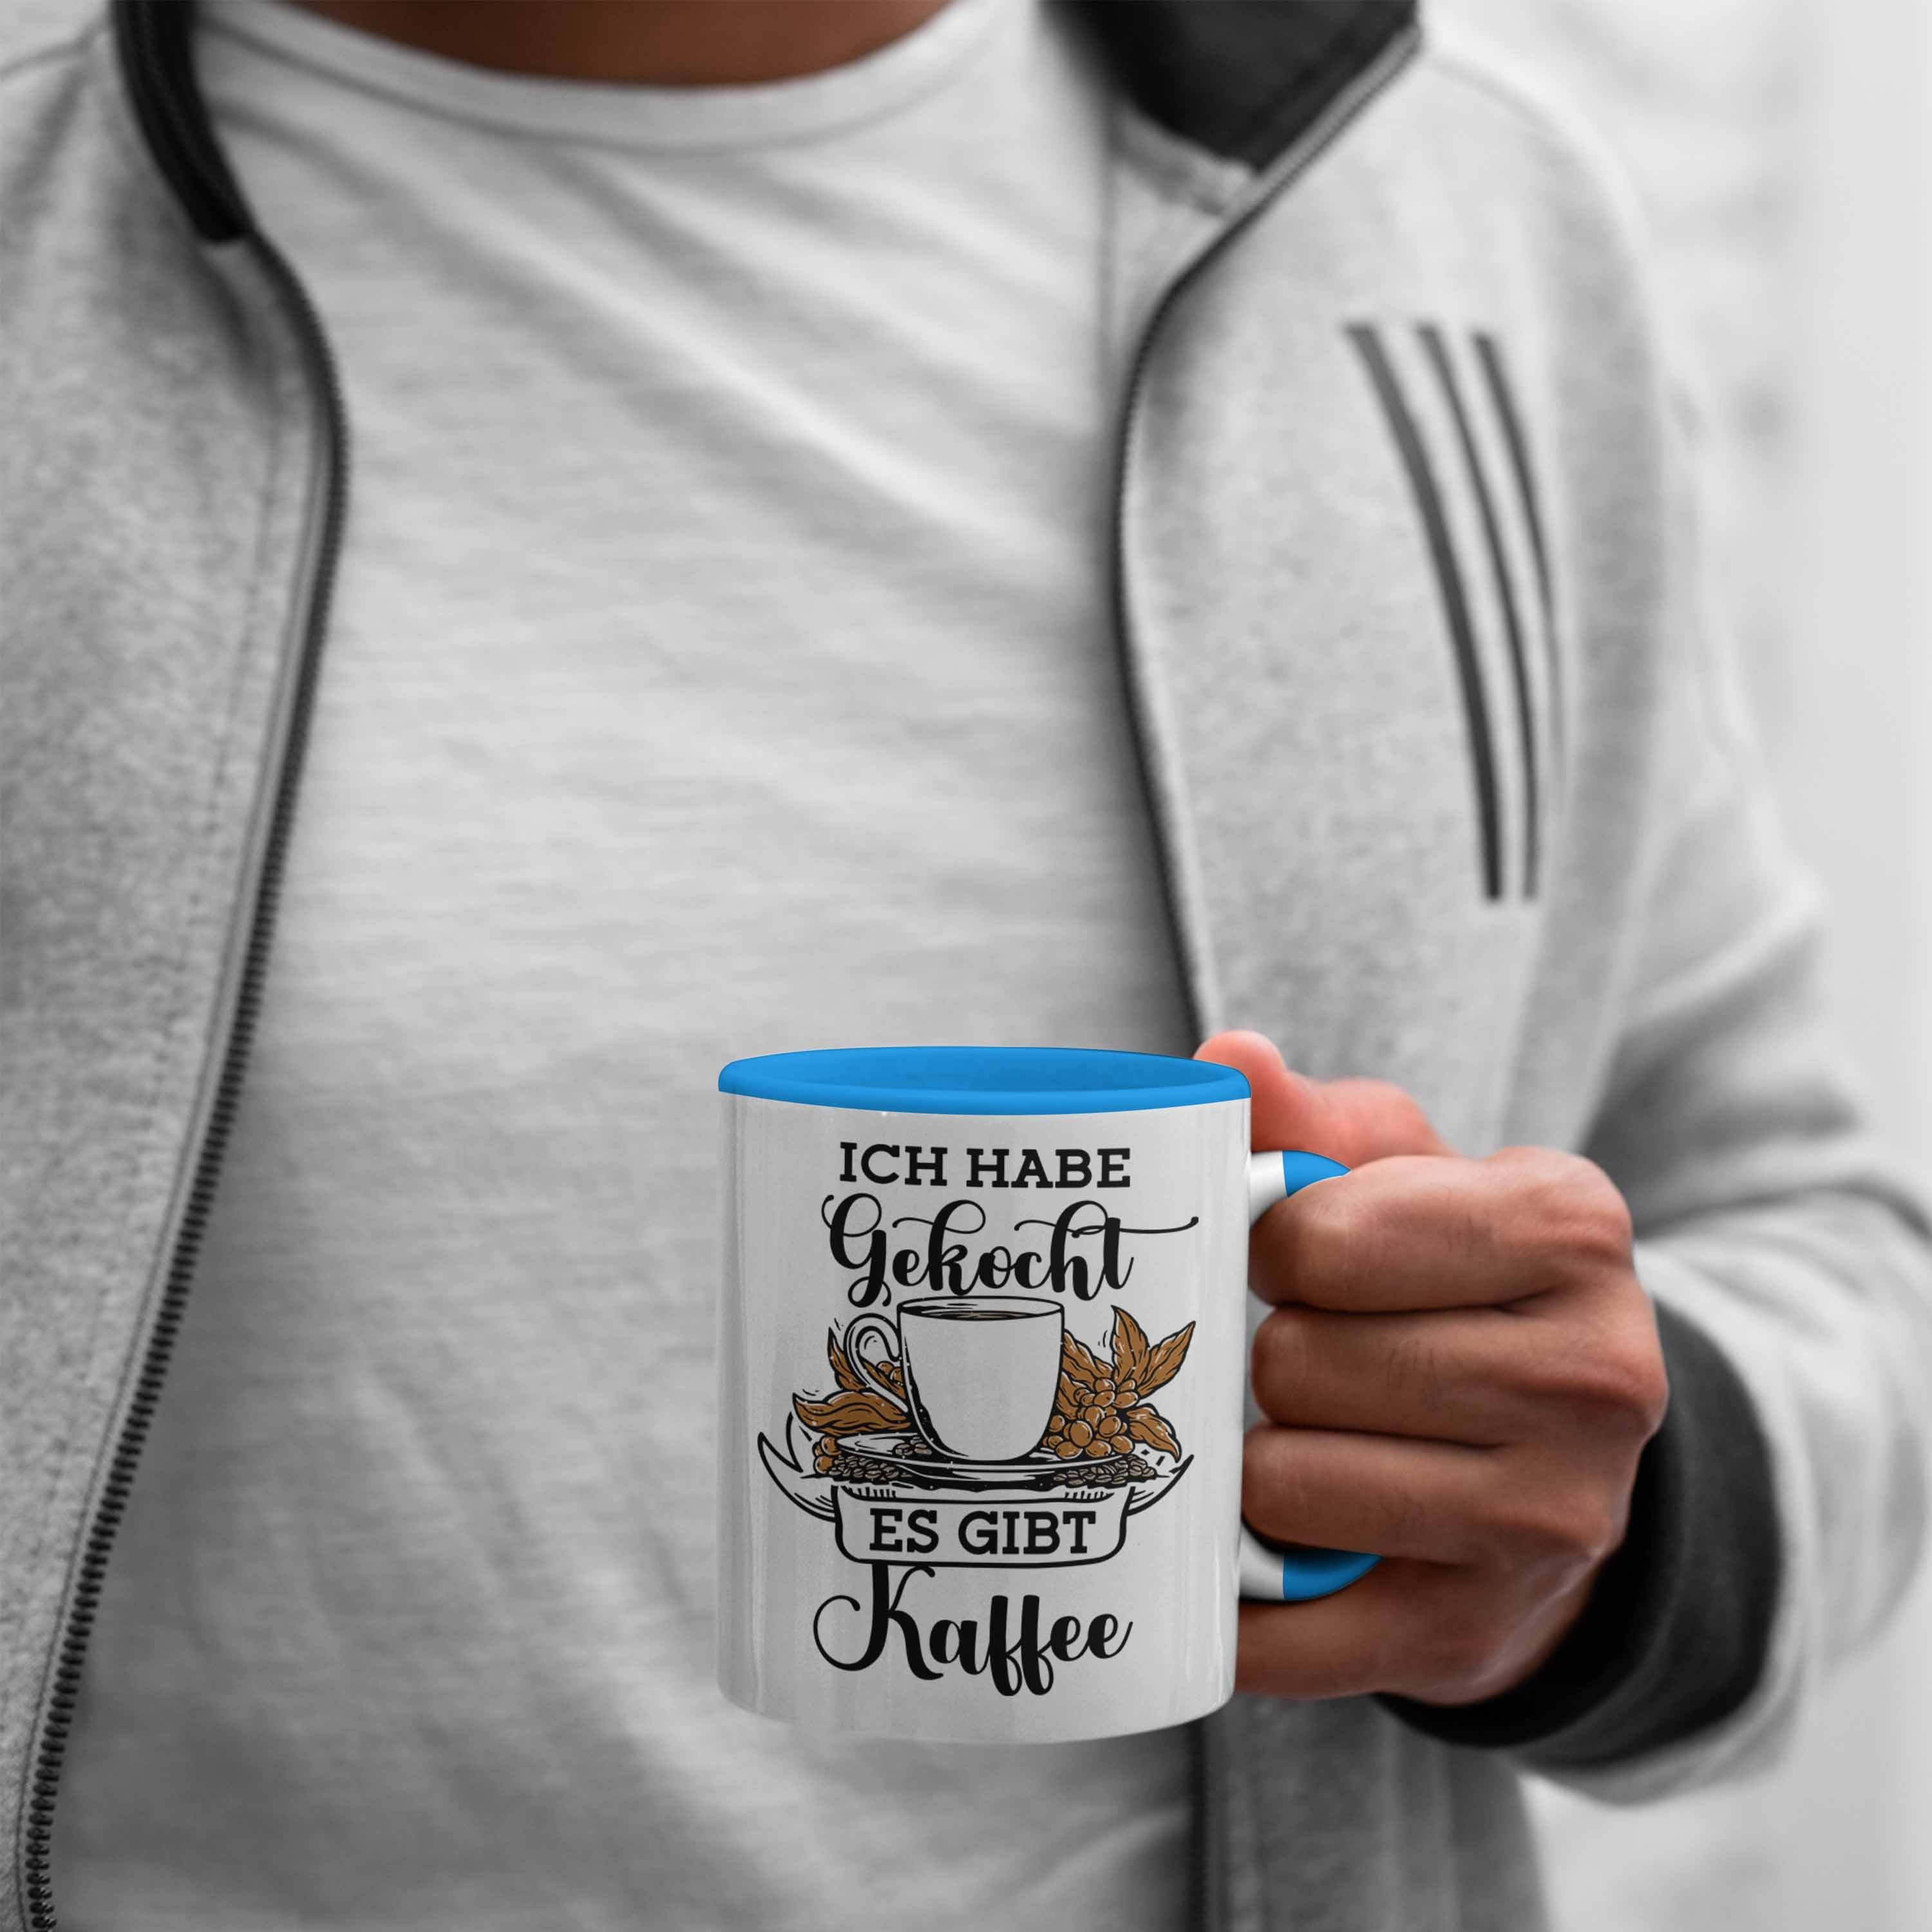 Trendation Tasse Lustige Tasse Habe Geschenk Gibt "Ich Gekocht, Blau Kaffee" für Es Kaffeeli